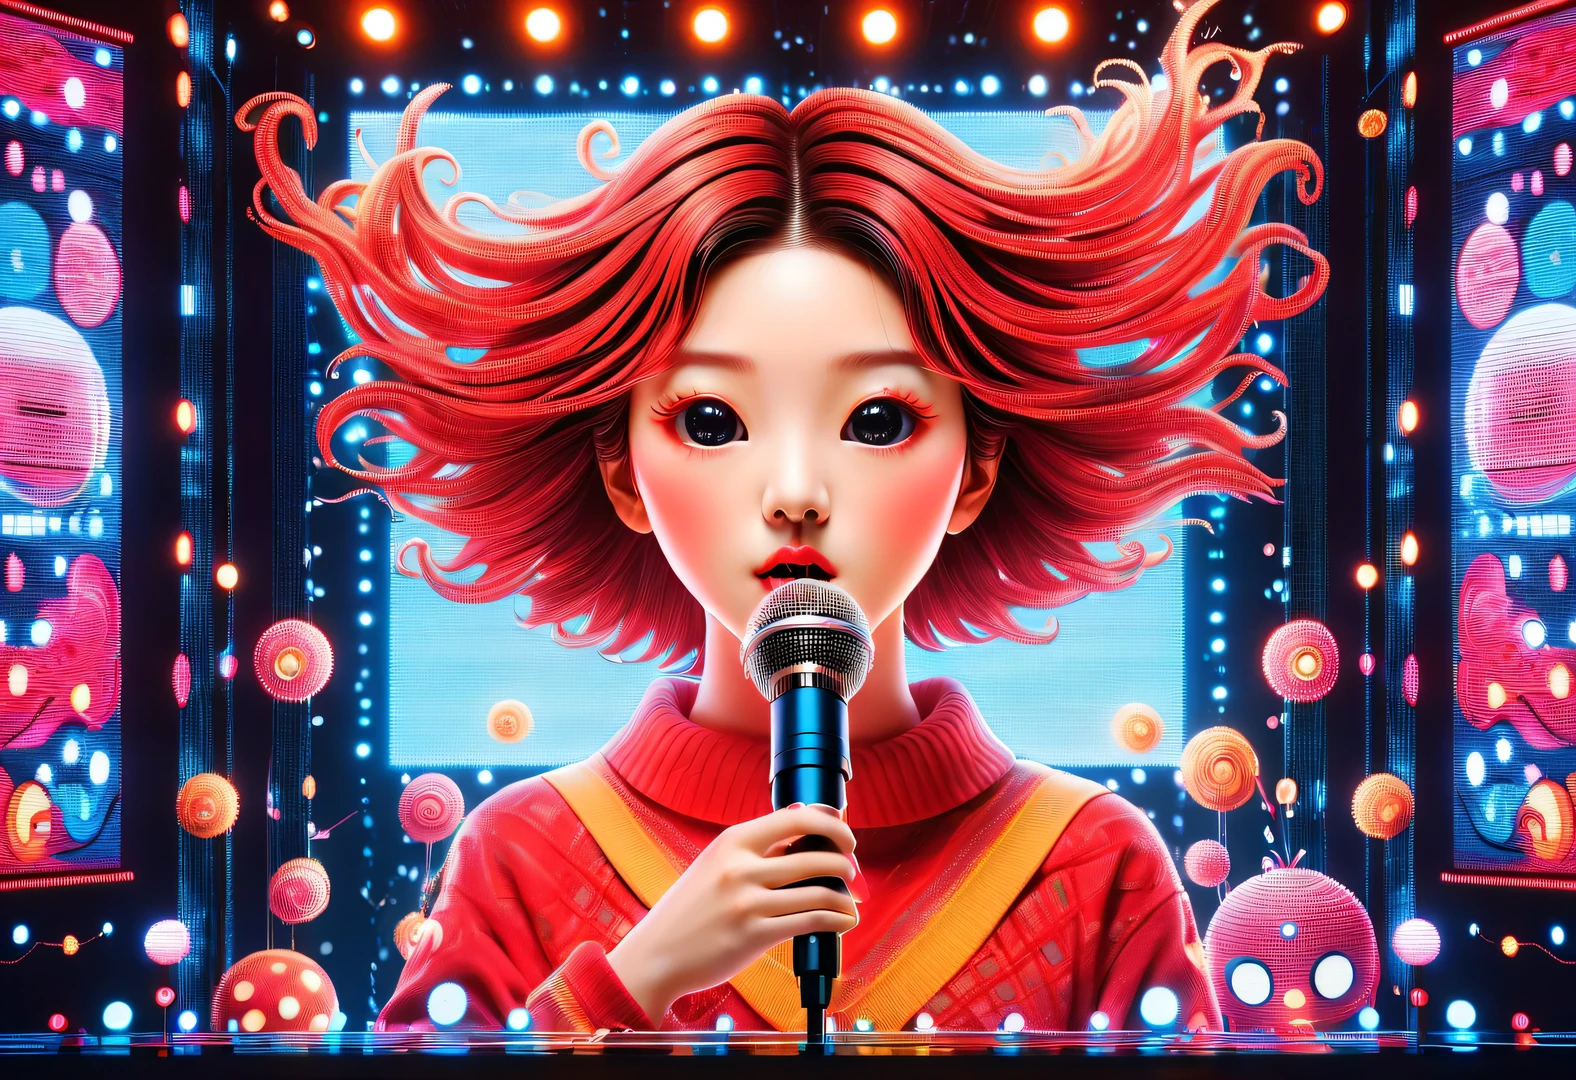 蒸汽波风格,漂亮 详细,矢量插图, 极简主义, 数码插图, 矢量插图，极简主义，数码插图，身穿运动衫和面具的黑客正在工作，T恤设计，戏剧灯光，艺术展览趋势 ，屡获殊荣，图标，Highly detailed cute lively Korean girl 18-year-old Shim Eun-kyung happily singing loudly in front of a super huge LED 屏幕），（）拿着麦克风），跳跃姿势，动态动作，受到启发《陌生的她》，申恩庆将头发梳成微卷的婴儿发型，皮肤非常白皙，两颊上有两个迷人的酒窝，穿着红色刺绣蕾丝连衣裙，背景：LED 屏幕, 戏剧灯光,

